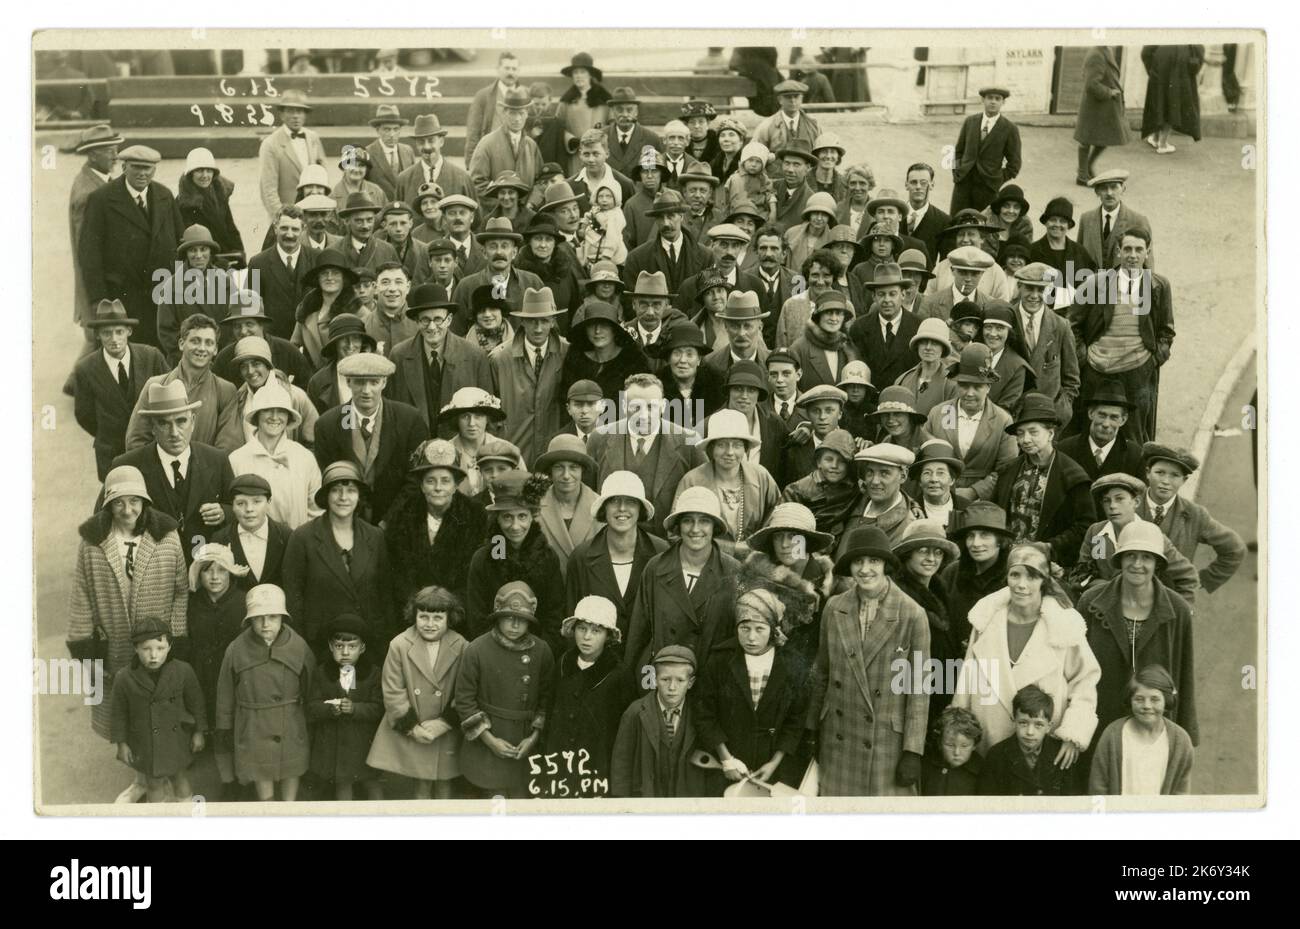 Original-Postkarte aus der Zeit der 1920er Jahre mit großer Menschenmenge am Meer, fotografiert am Pier. Veröffentlicht von B.B. Fotoserie vom 9. August 1925 18.16 Uhr, gedruckt auf der Vorderseite. Einige Charaktere, viele Moden, darunter Damencloche-Hüte und homburg-Hüte für Herren und flache Mützen. Bournemouth, England, Großbritannien. Retro-Foto am Meer. Stockfoto